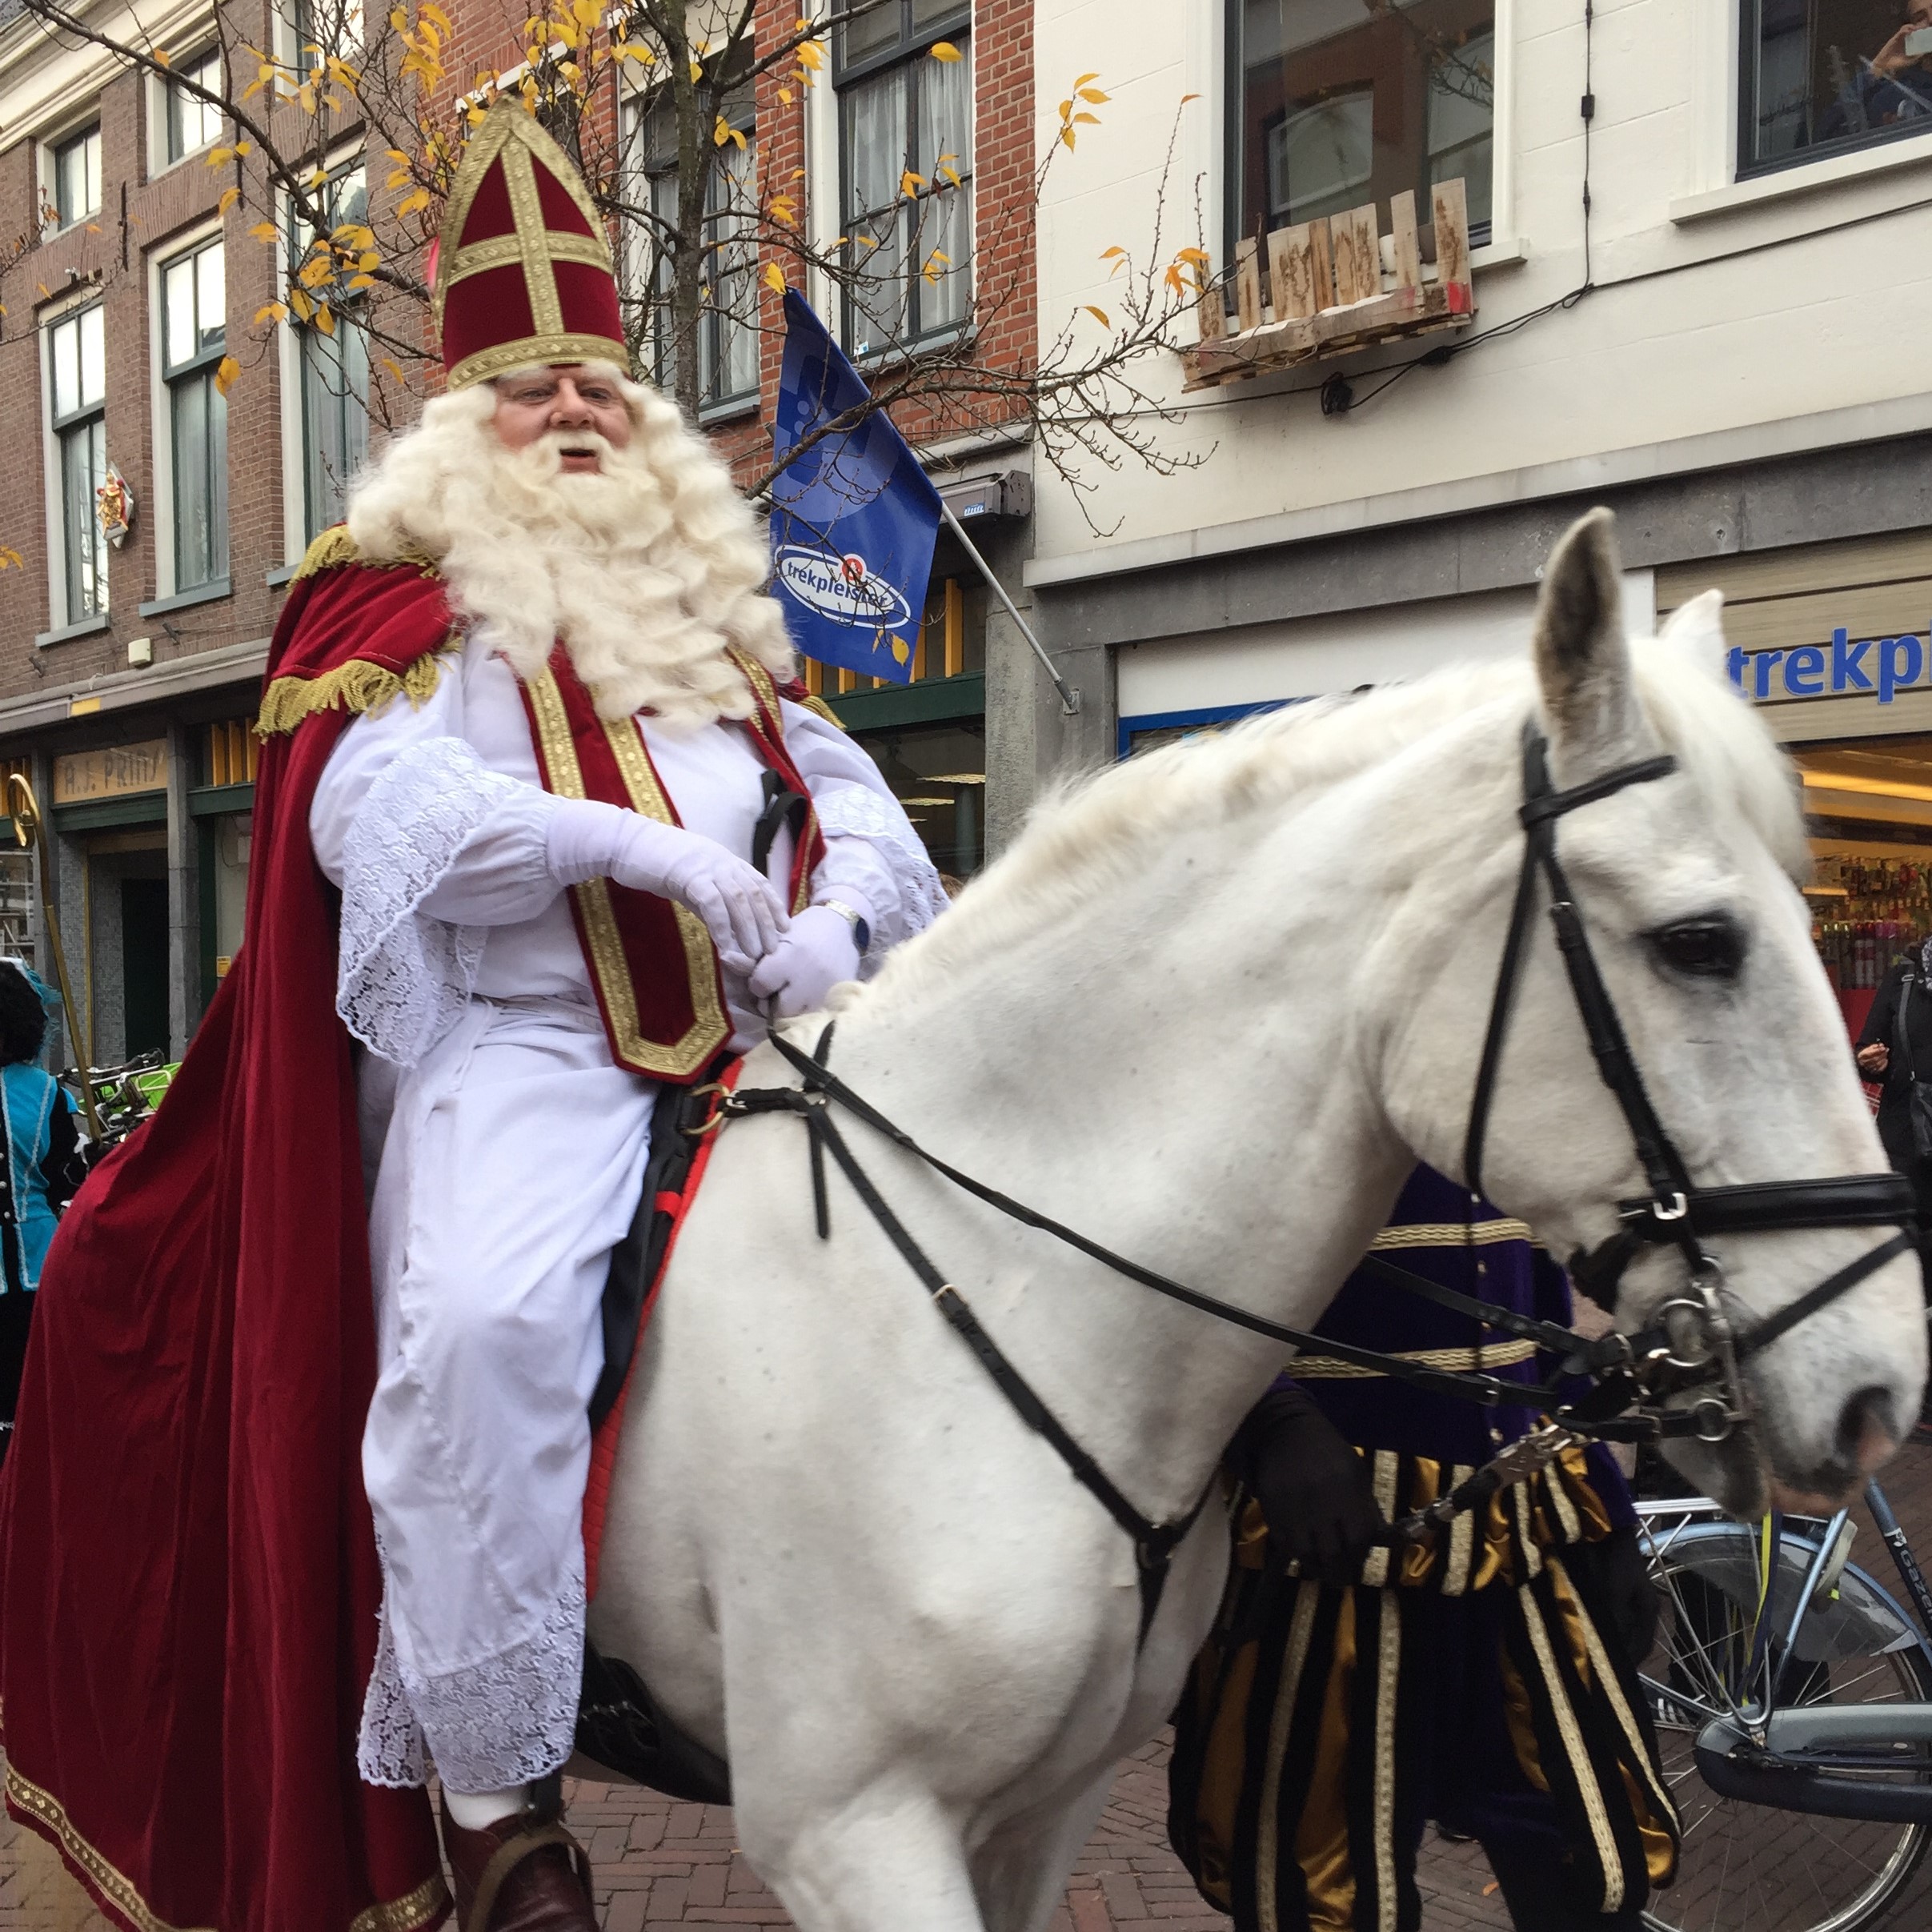 Sinterklaas oder Santa Claus? Studium | studieren weltweit